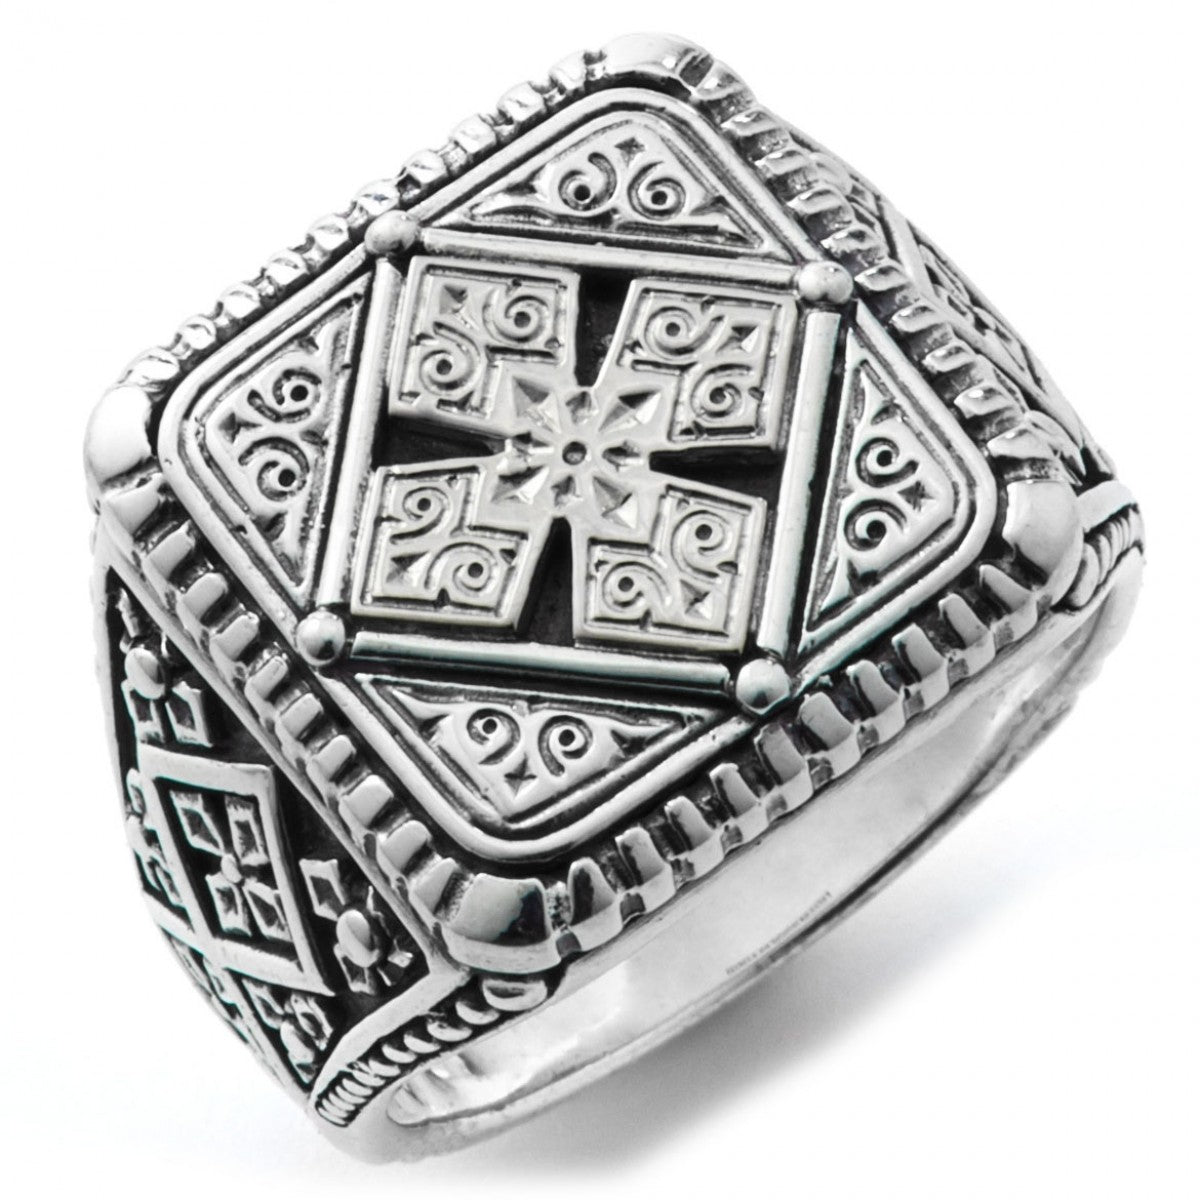 Konstantino Men's 925 Sterling Silver Square Maltese Ring